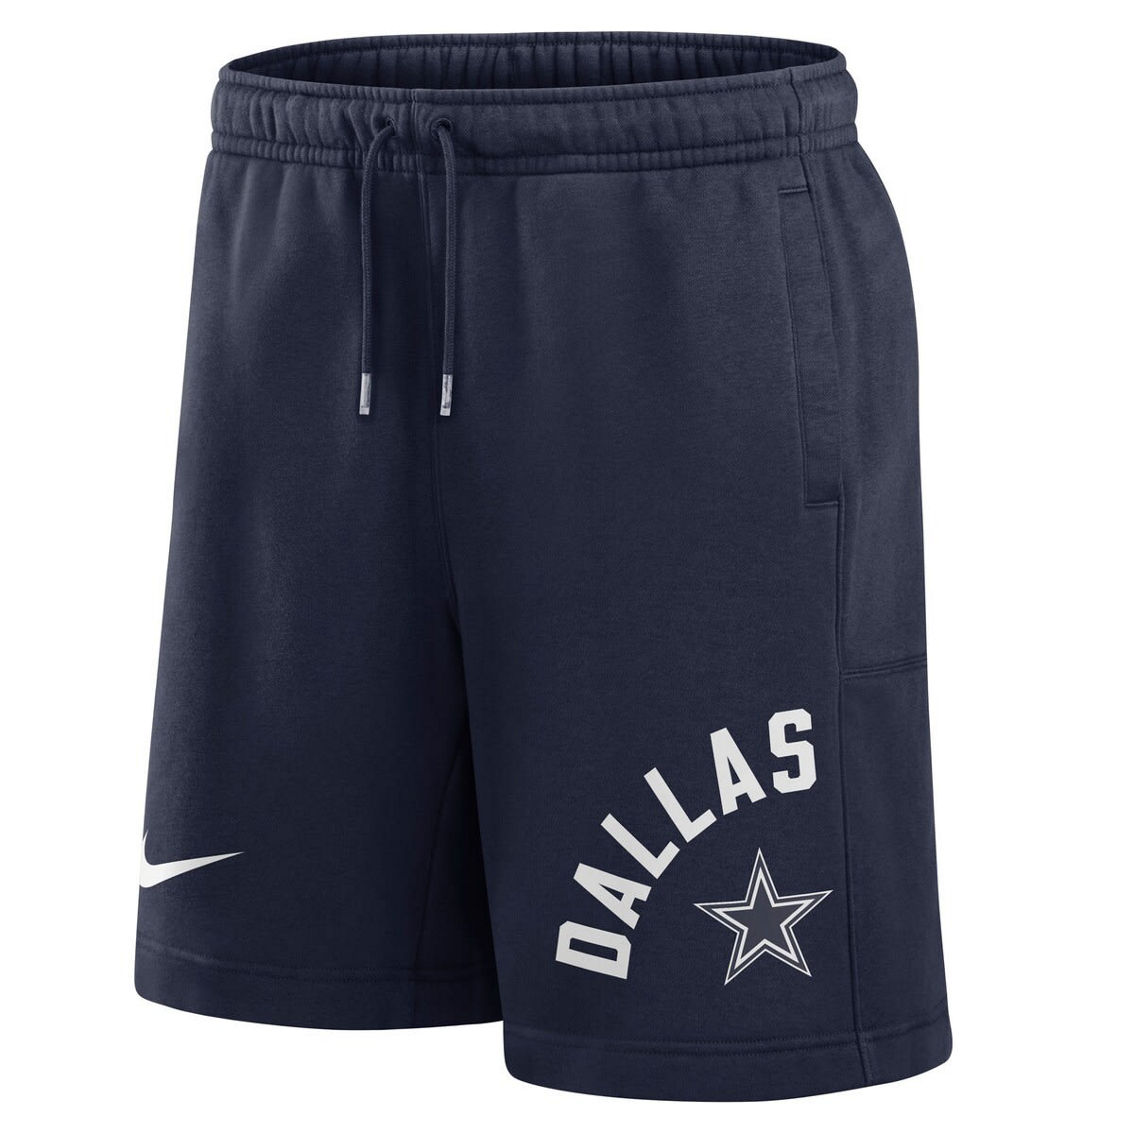 Nike Men's Navy Dallas Cowboys Arched Kicker Shorts - Image 3 of 4